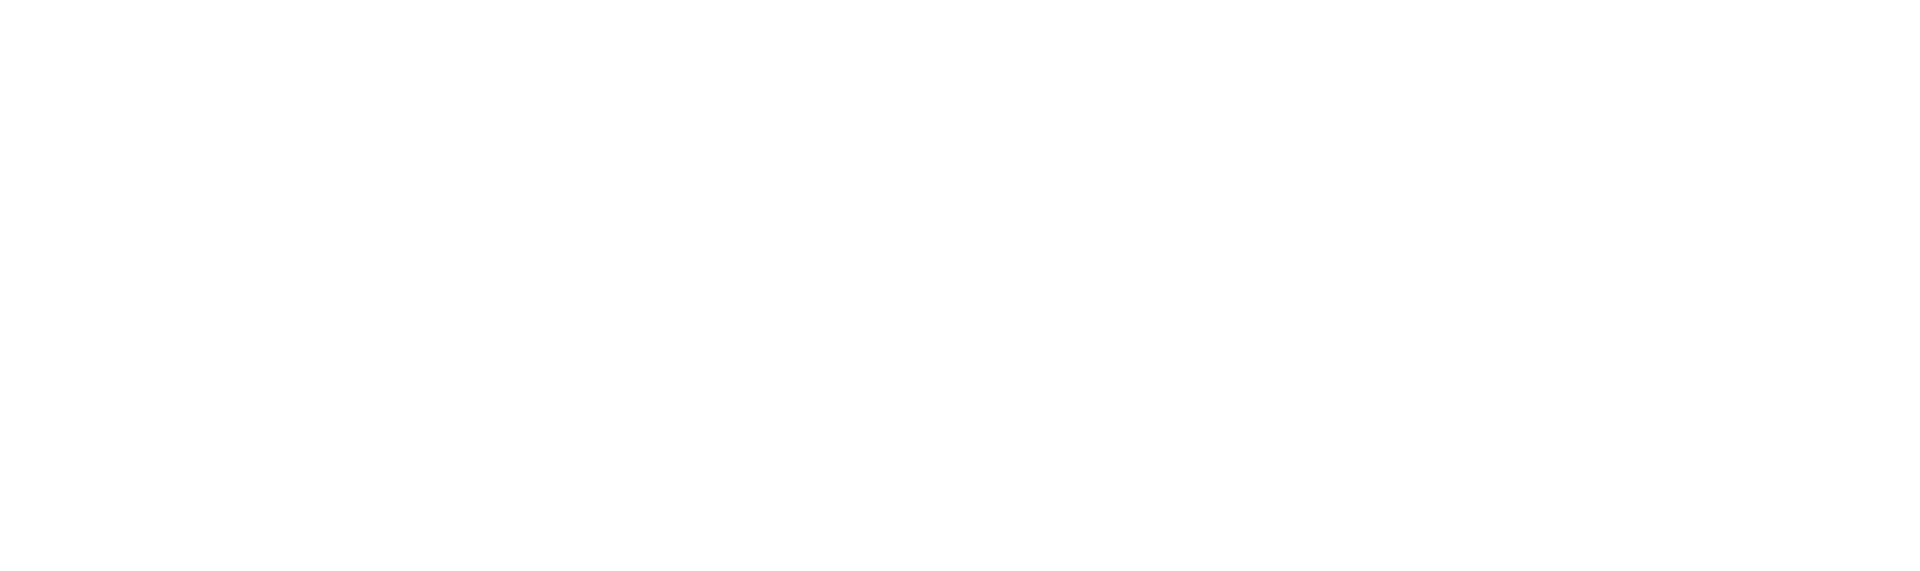 VBO logo